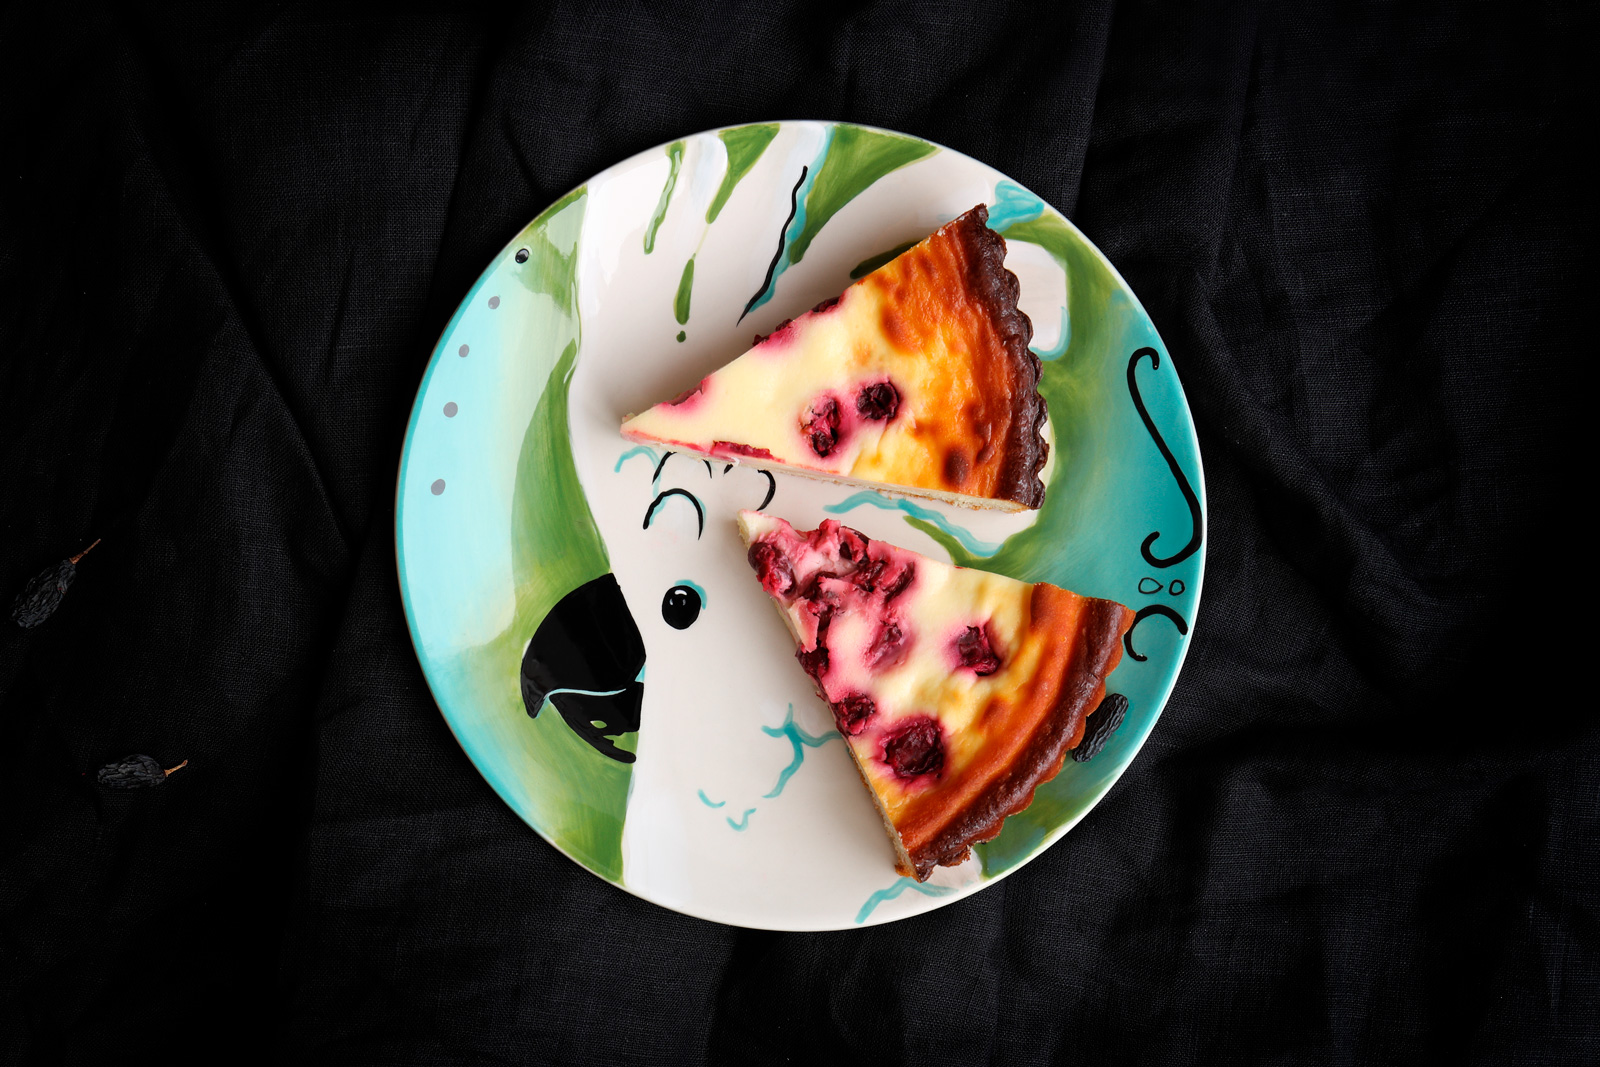 фотоссесия пирог с вишней на тарелке с попугаем